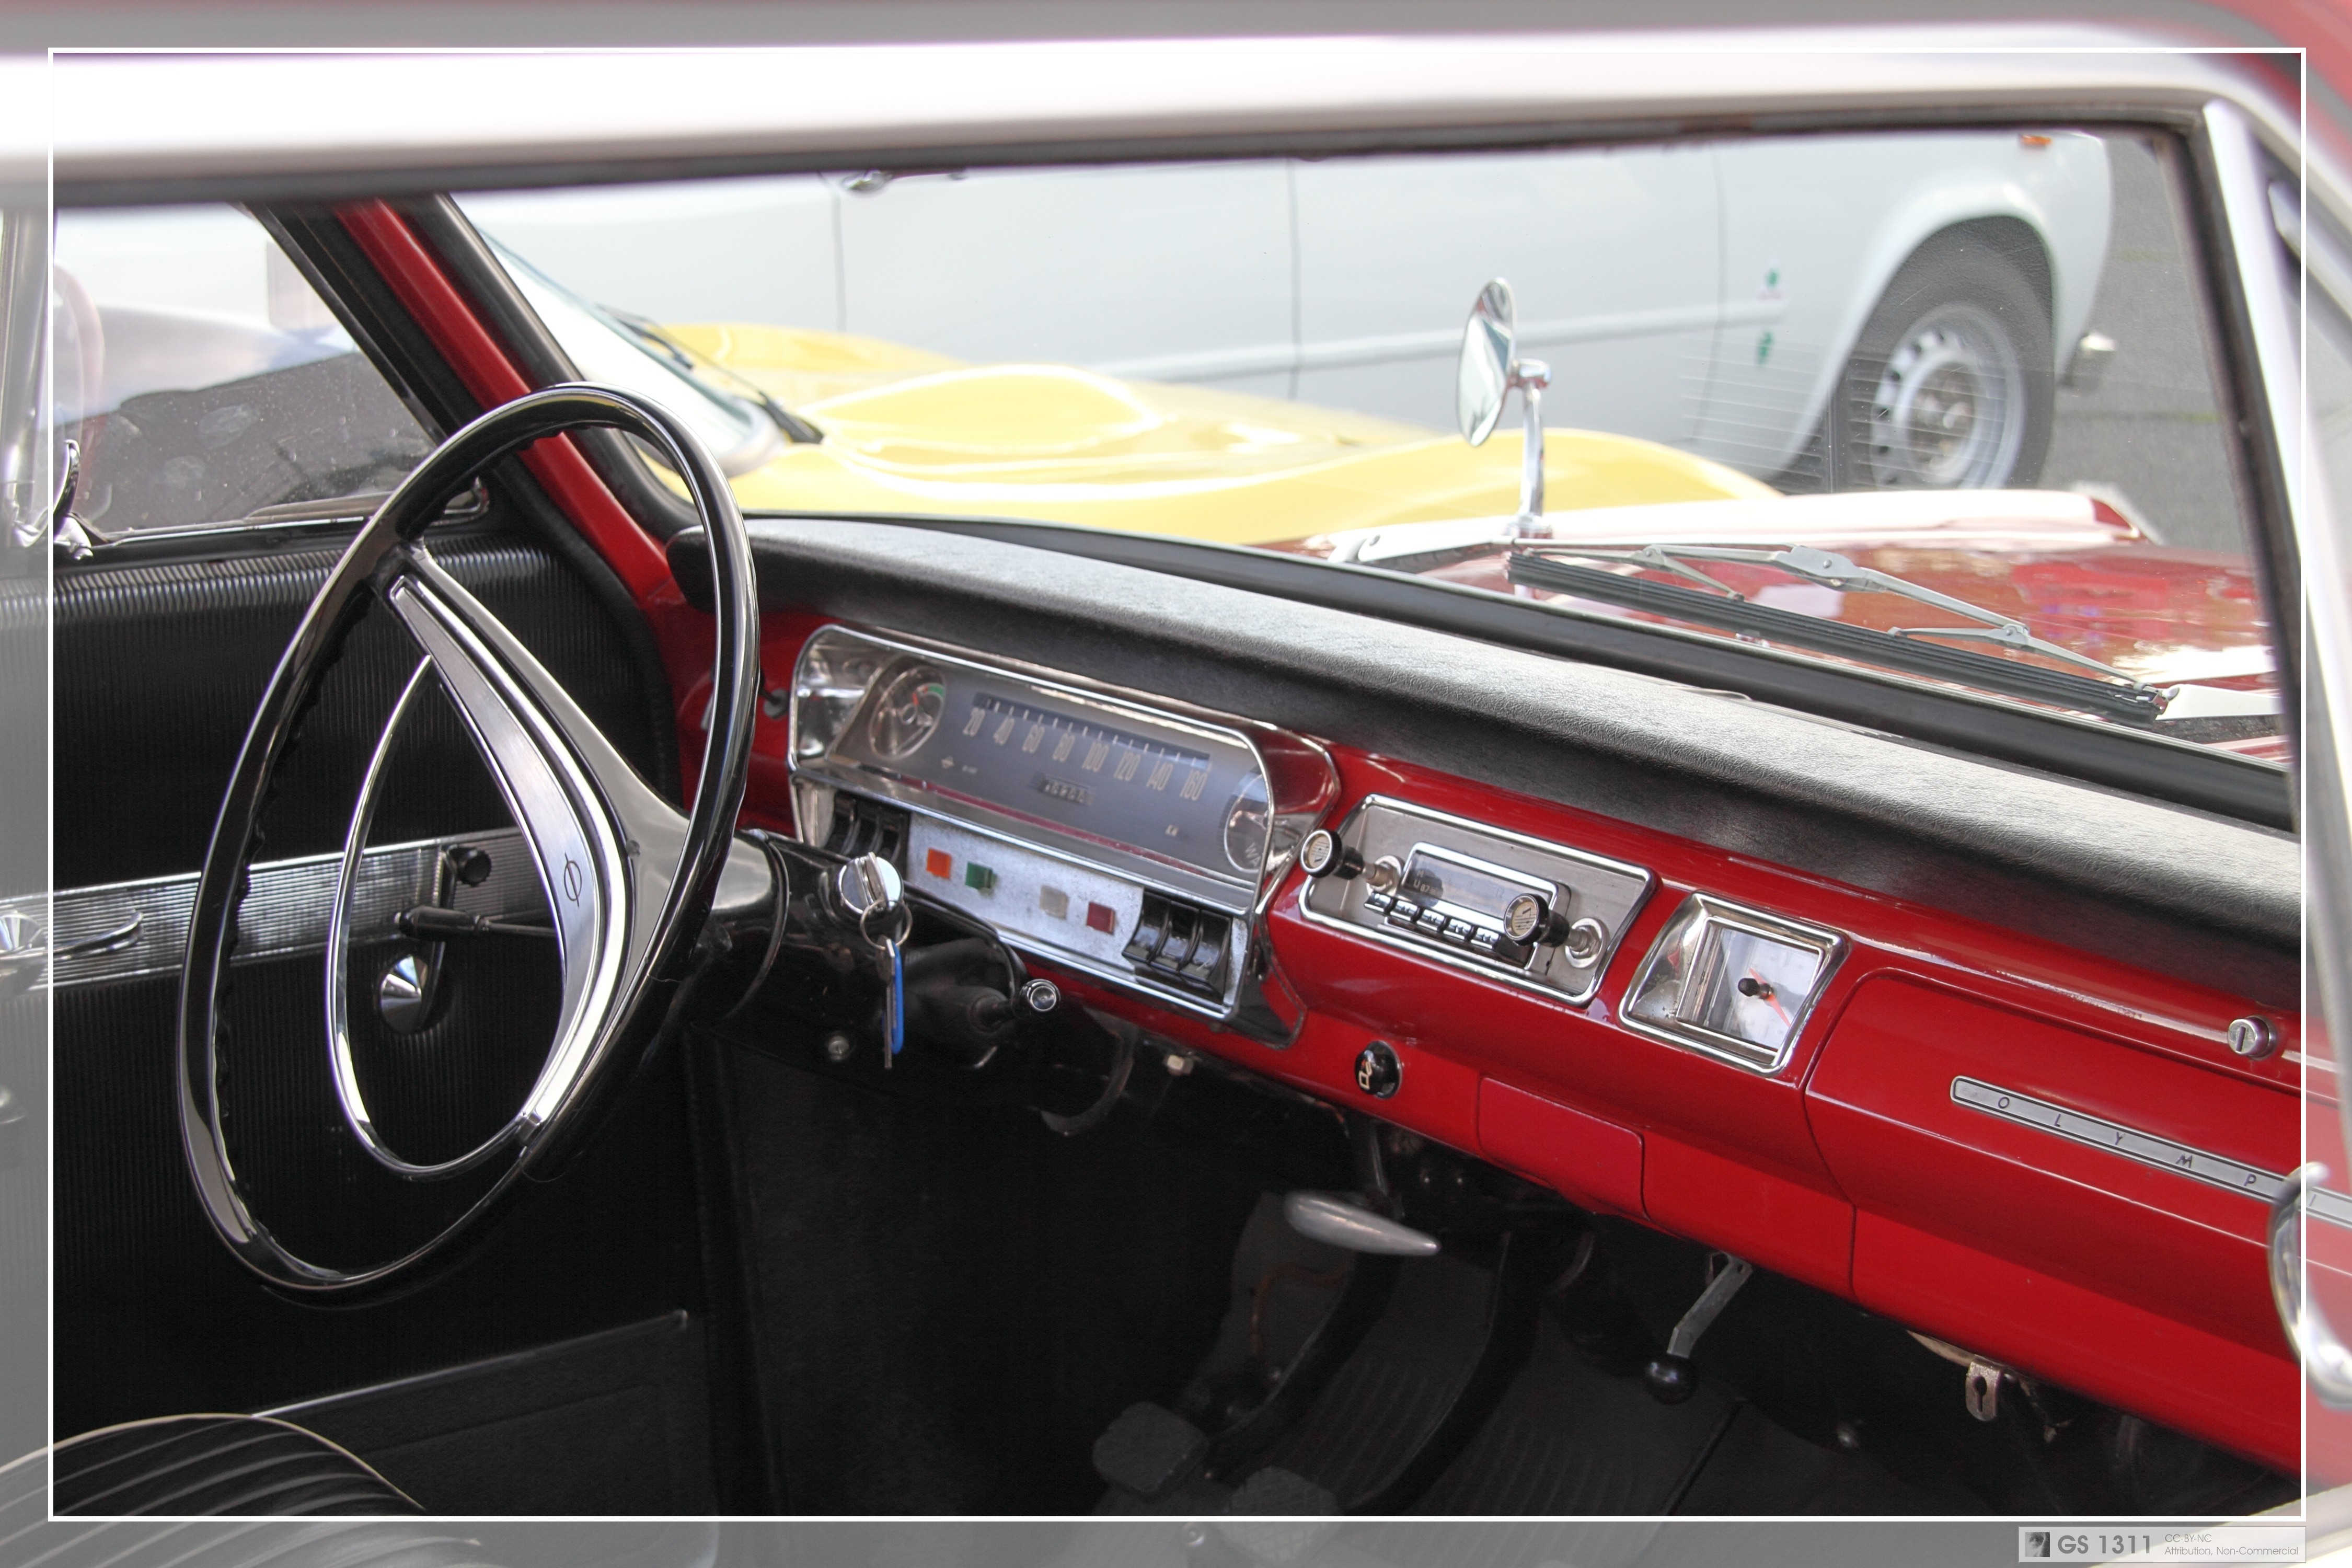 1963 -1965 Opel Rekord A Caravan (02) | Flickr - Photo Sharing!